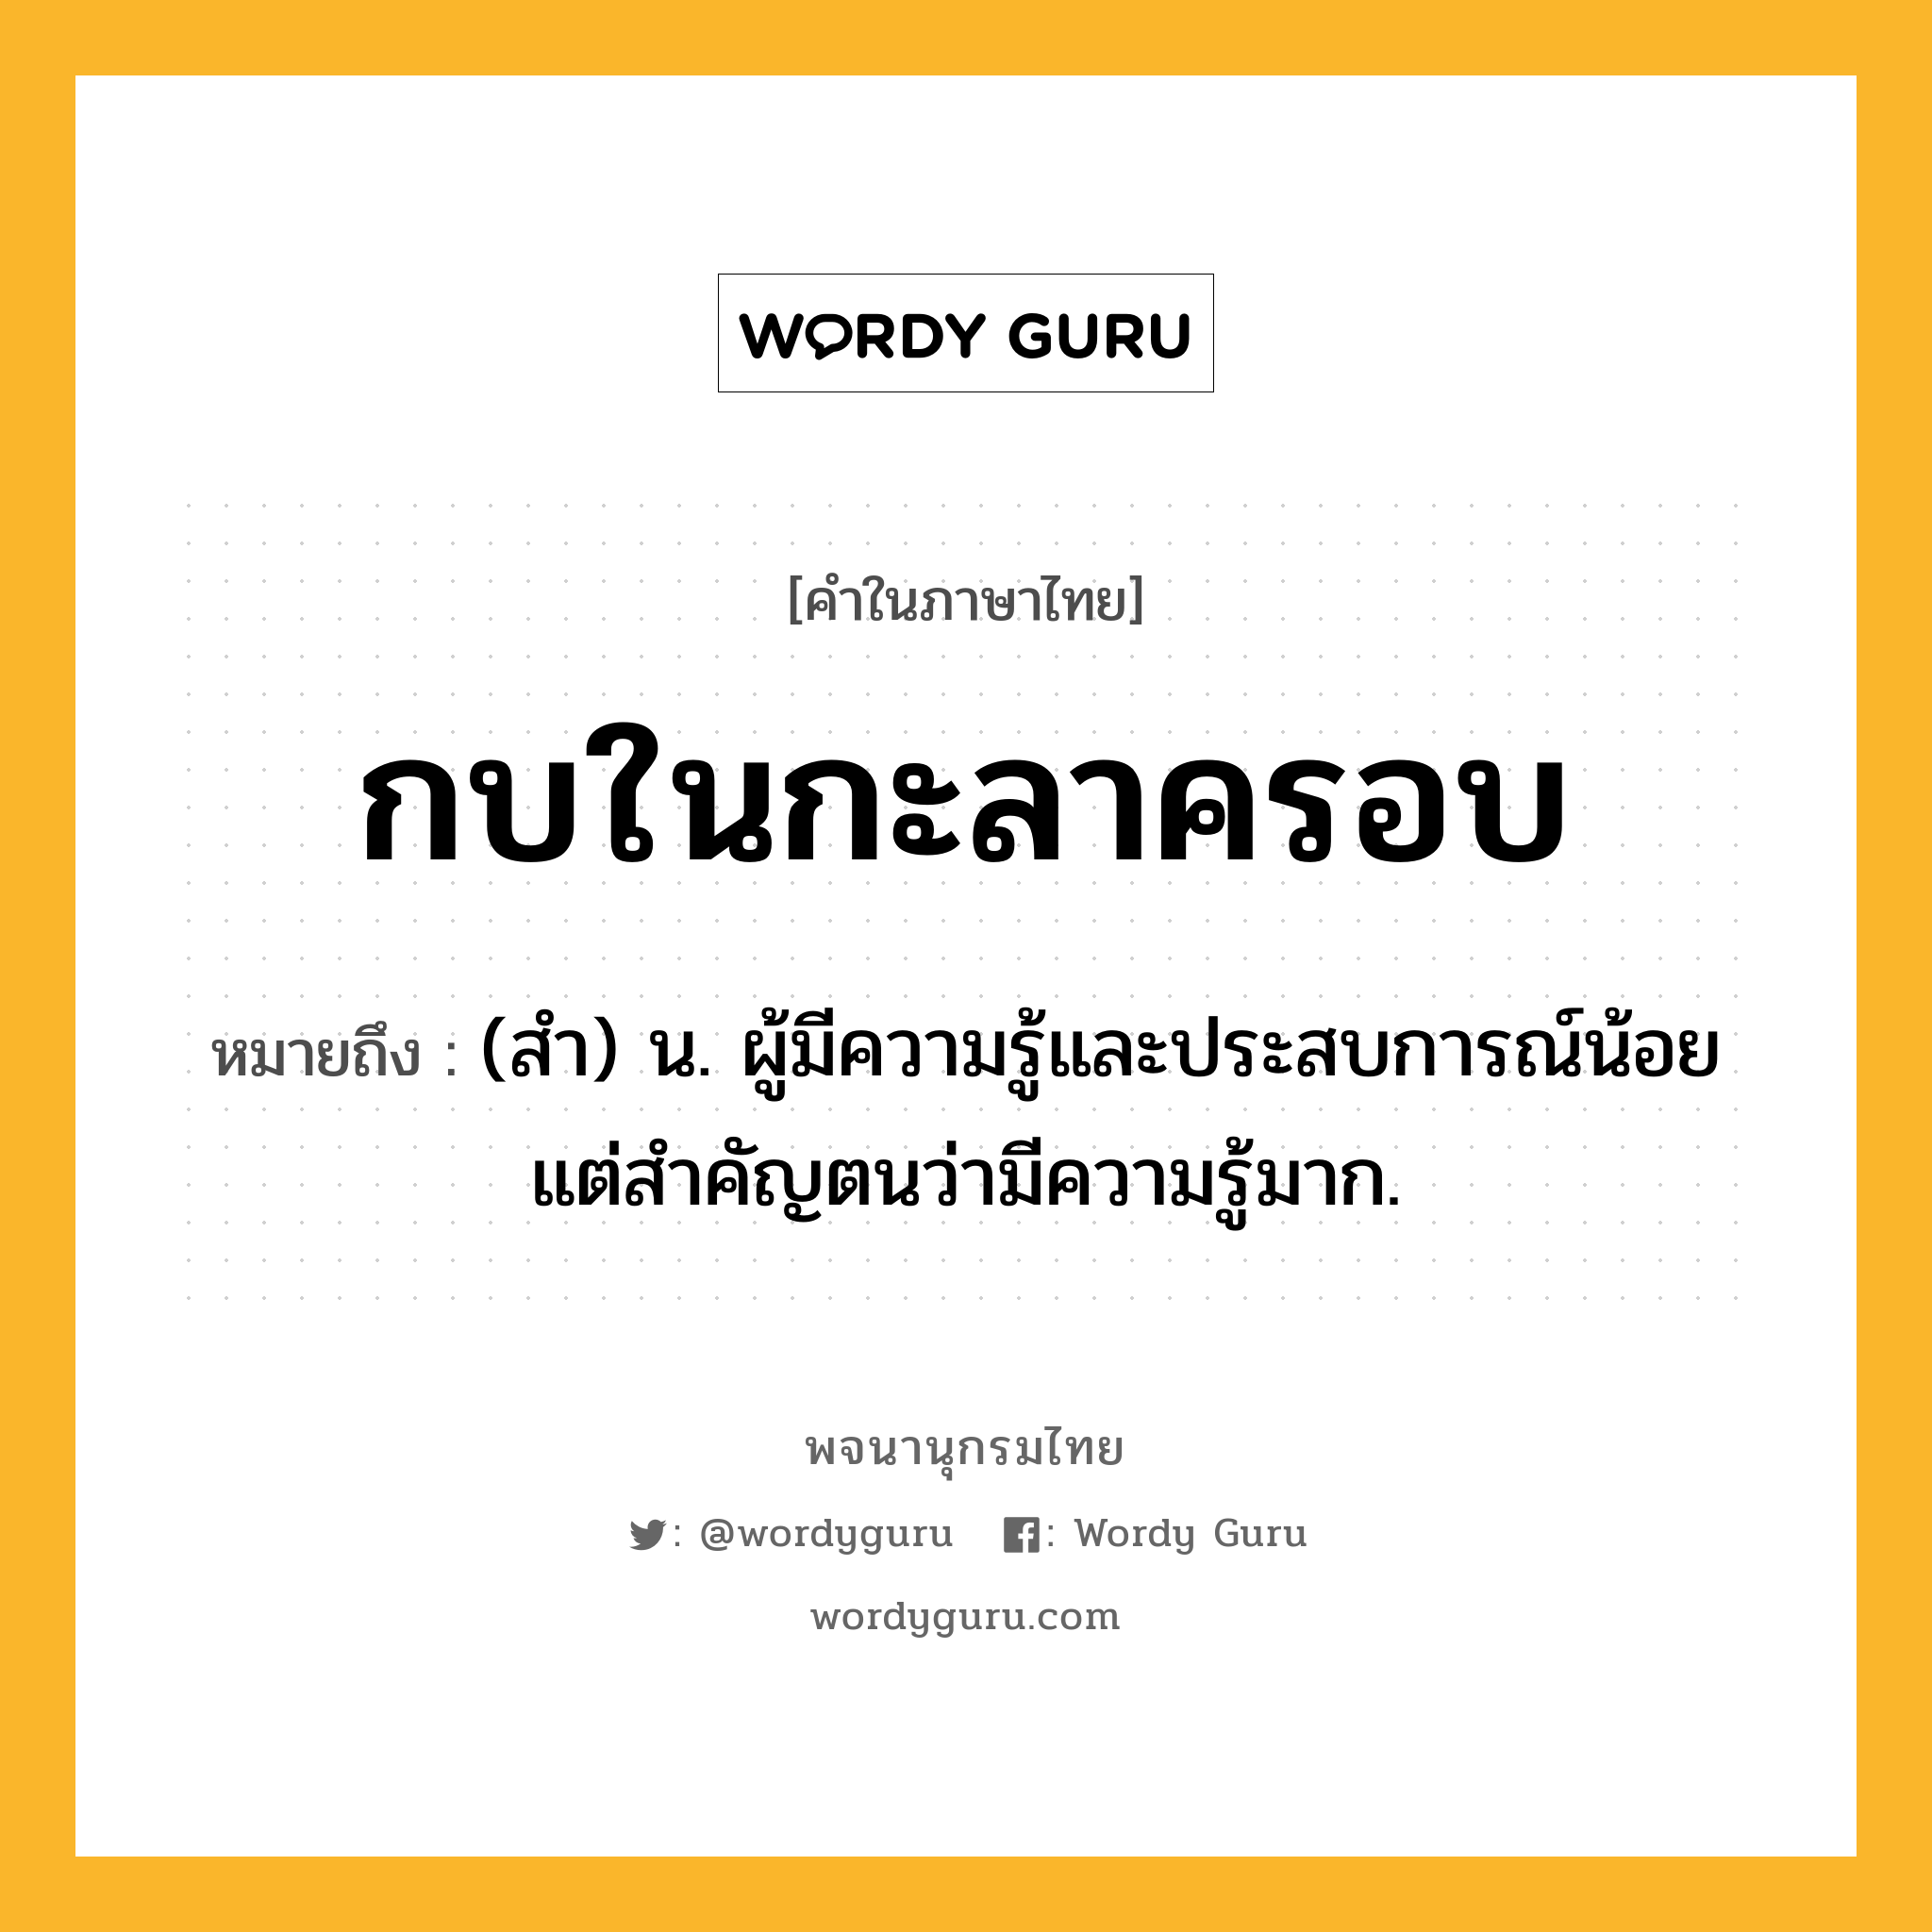 กบในกะลาครอบ หมายถึงอะไร?, คำในภาษาไทย กบในกะลาครอบ หมายถึง (สำ) น. ผู้มีความรู้และประสบการณ์น้อยแต่สำคัญตนว่ามีความรู้มาก.